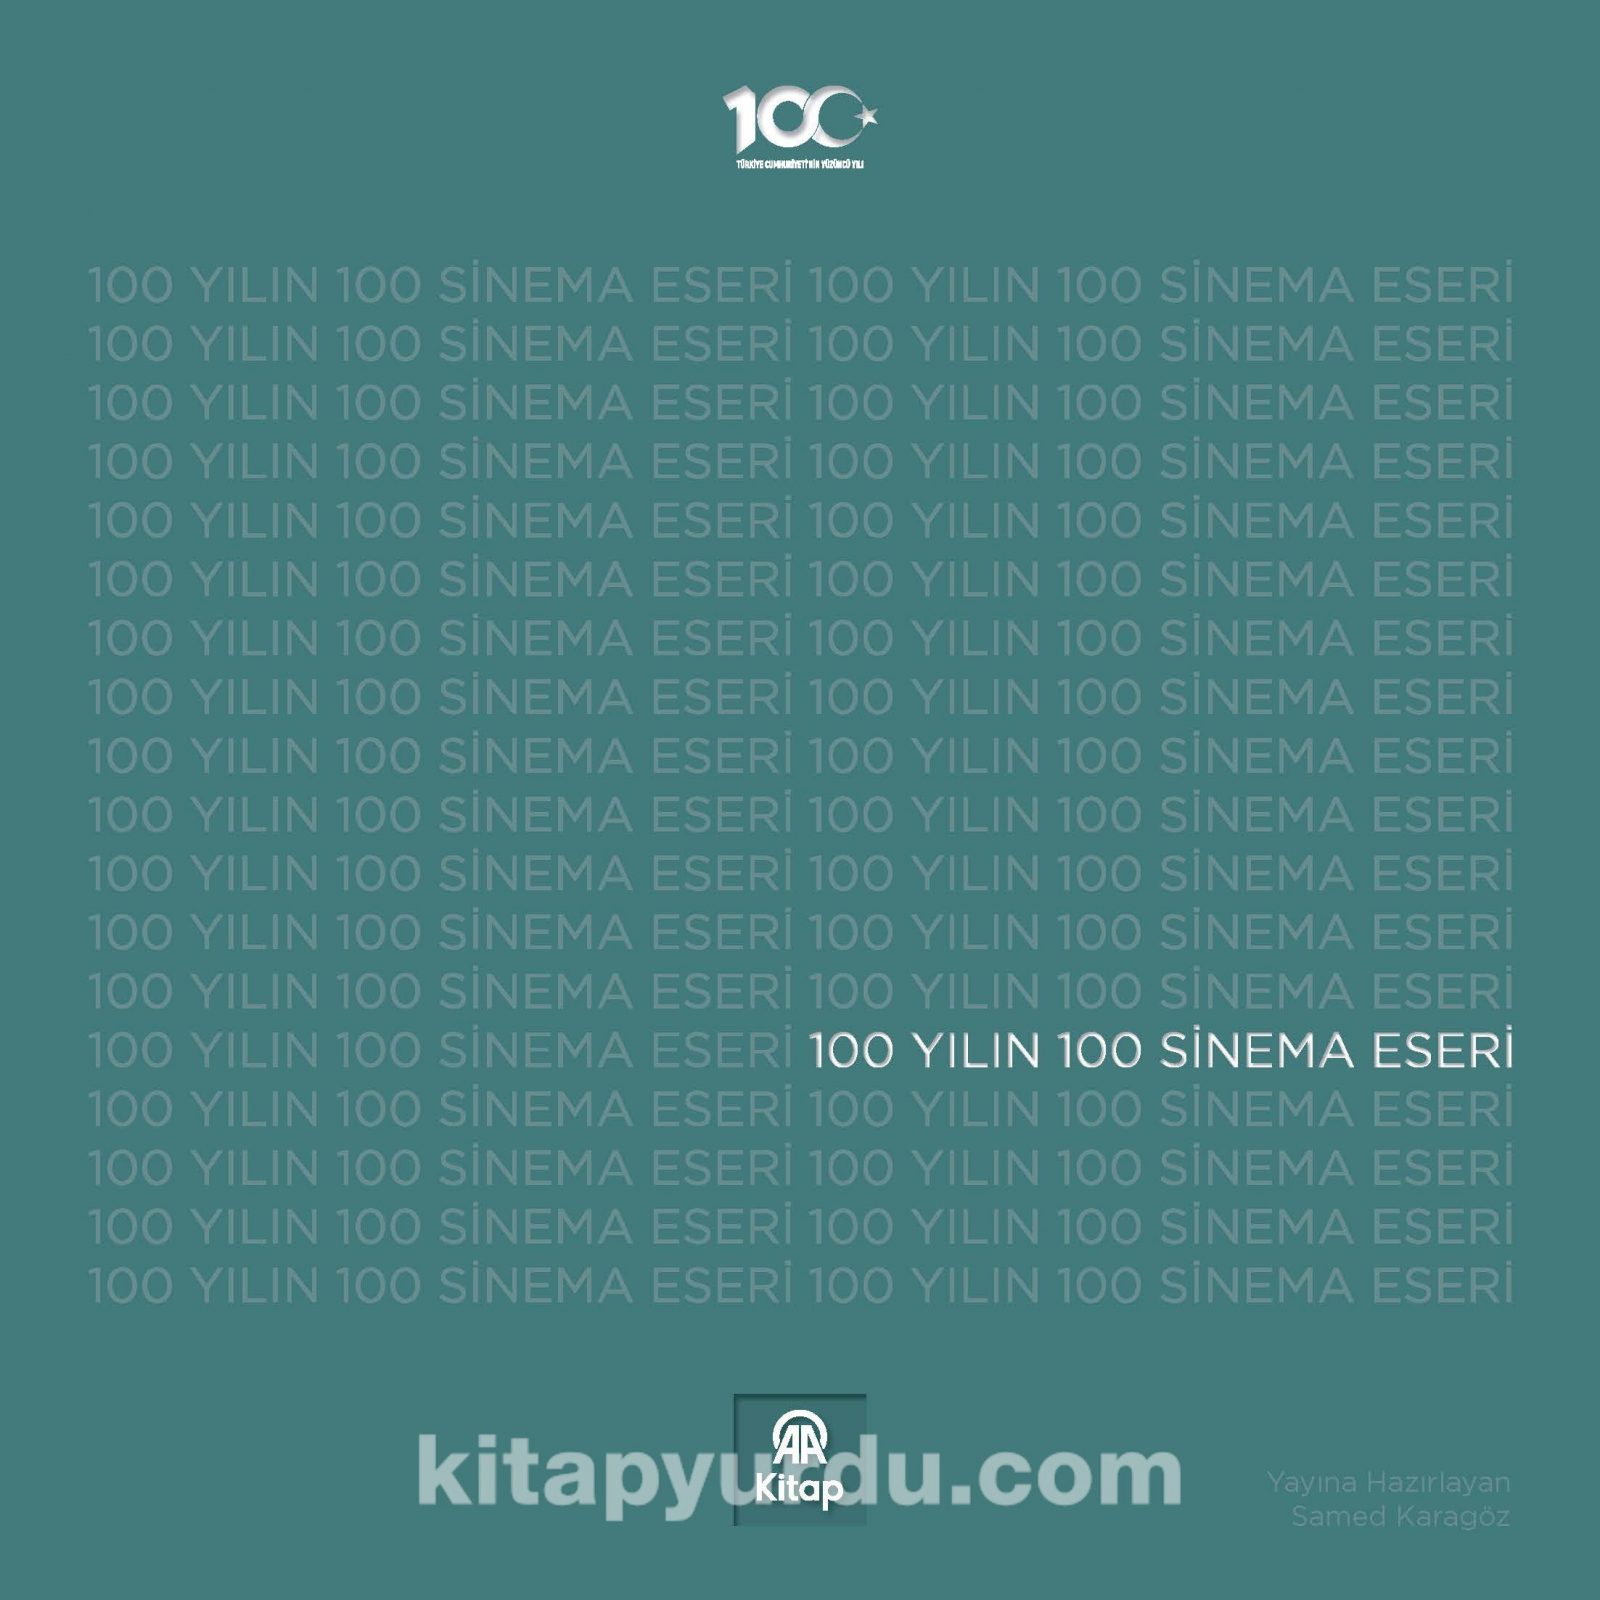 100 Yılın 100 Sinema Eseri